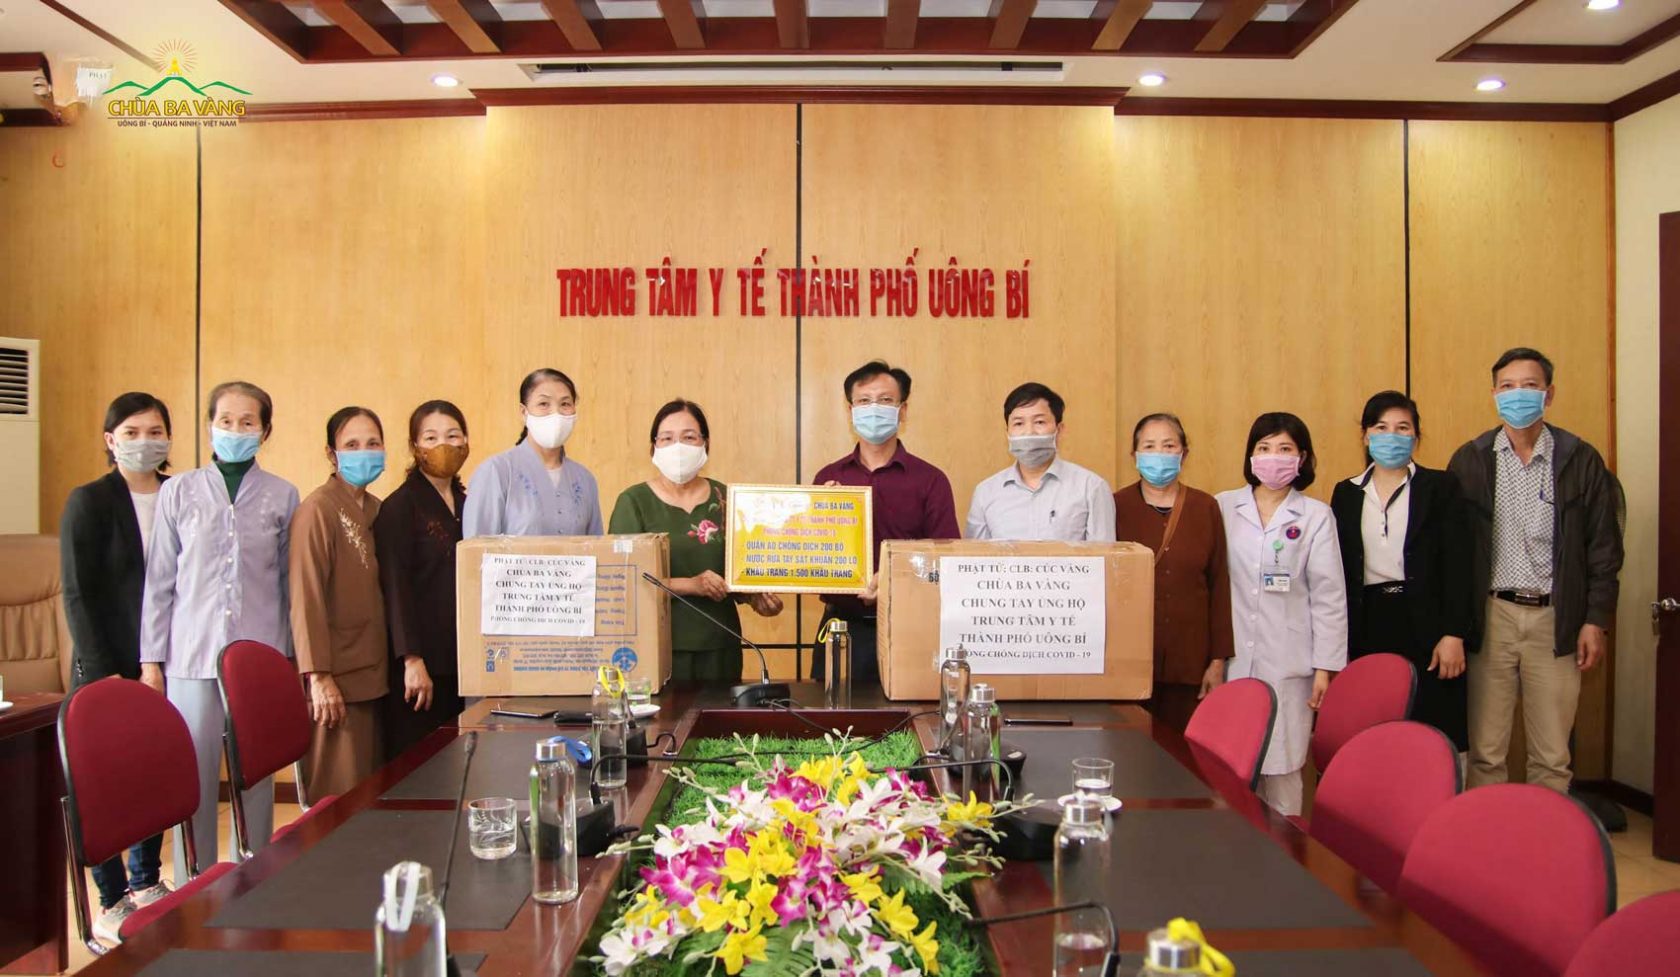 Ban lãnh đạo trung tâm cũng gửi lời cảm ơn sâu sắc tới Thầy Thích Trúc Thái Minh cùng các quý Thầy và CLB Cúc Vàng - Tập Tu Lục Hòa vì món quà ý nghĩa và sự quan tâm, chung tay, góp sức của những người con Phật cùng với các cán bộ y tế trong mùa dịch